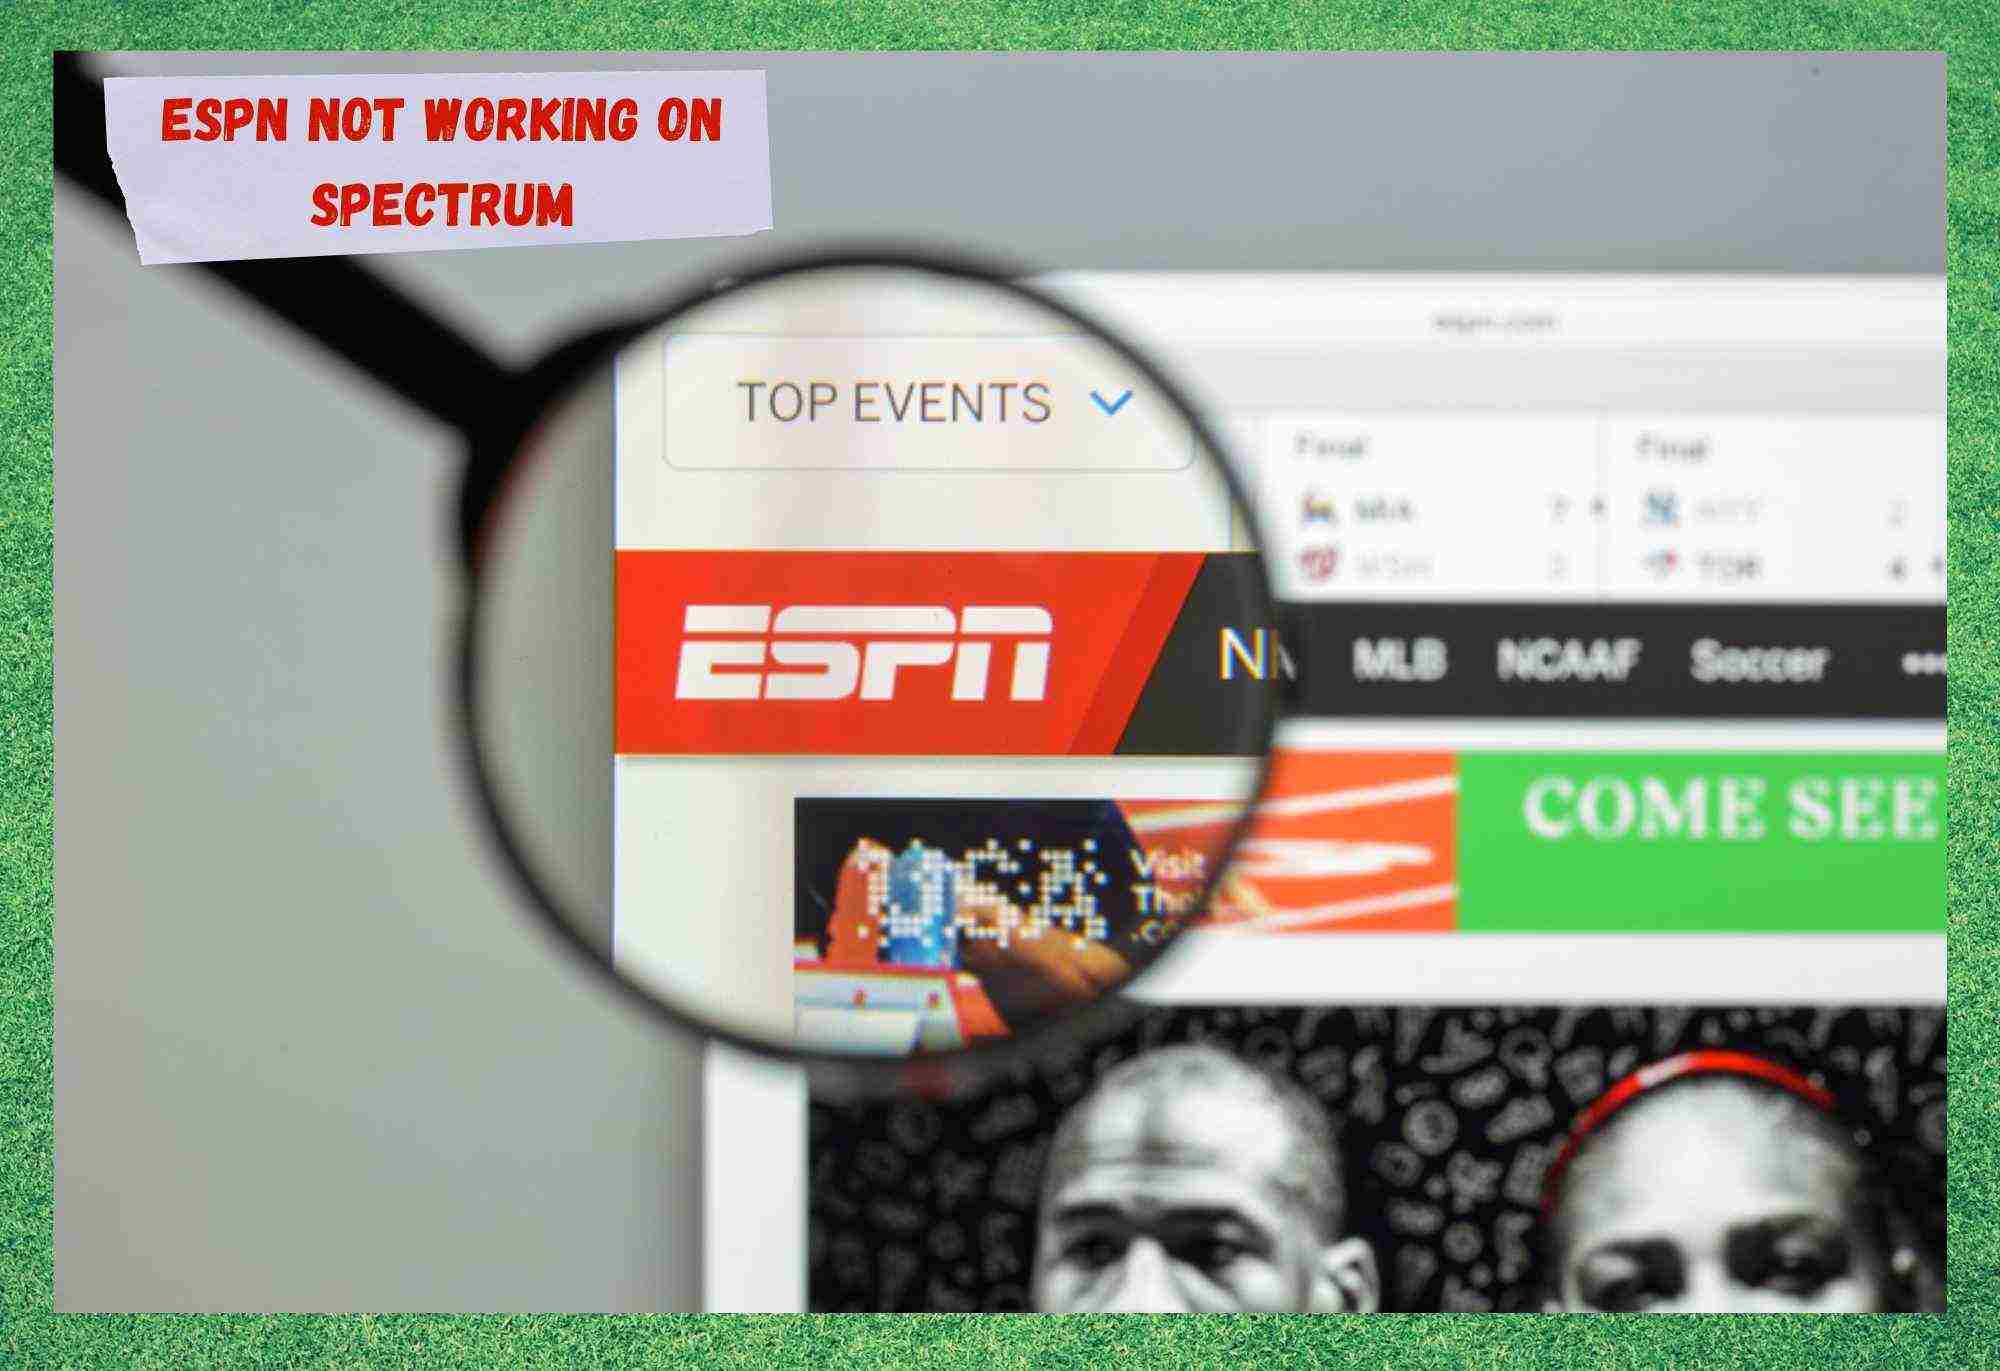 സ്പെക്ട്രത്തിൽ ESPN പ്രവർത്തിക്കാത്തത് പരിഹരിക്കാനുള്ള 7 വഴികൾ